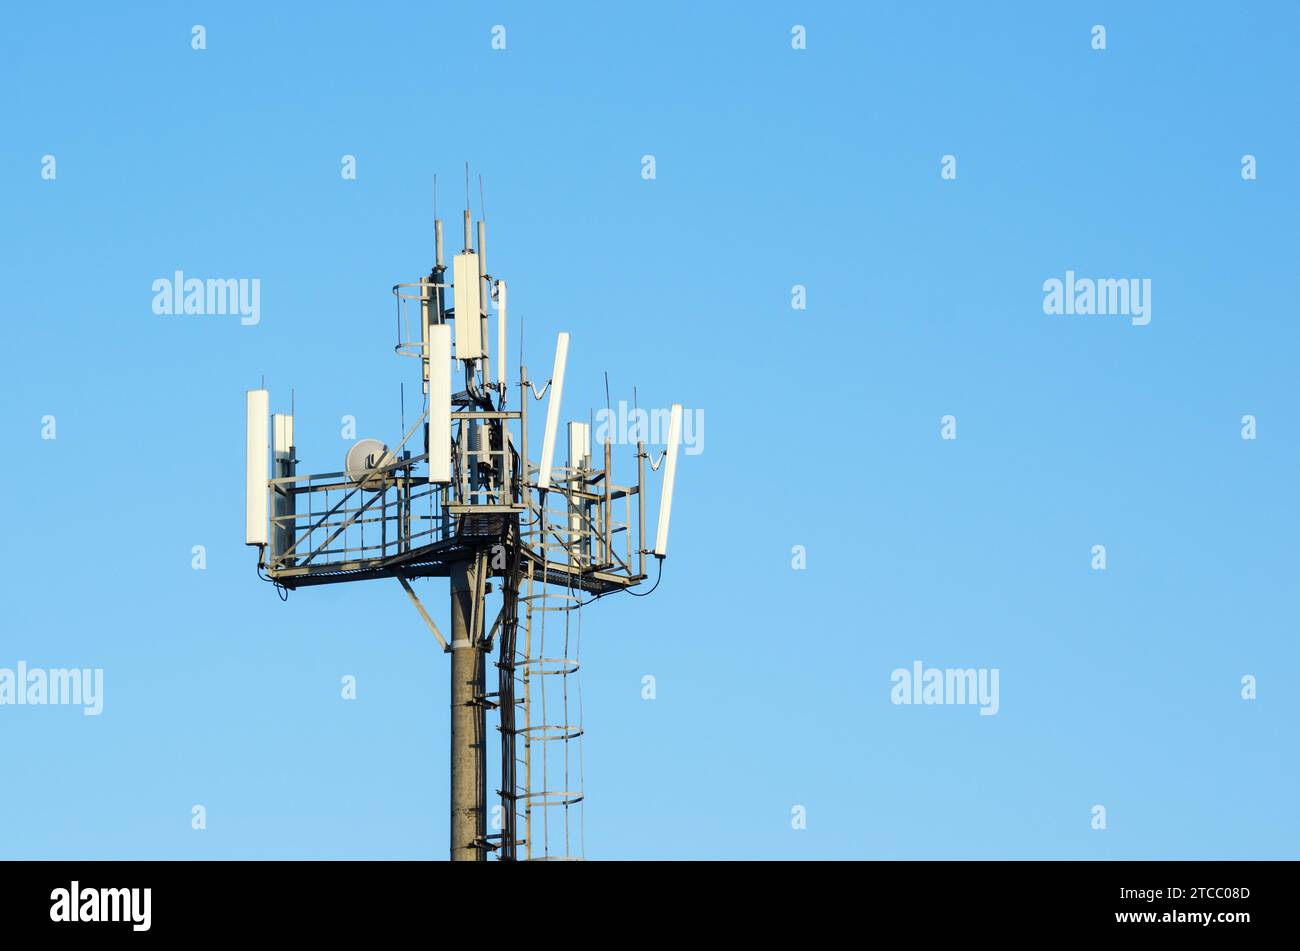 Antennes modernes réseaux cellulaires contre la parabole plate sur ciel bleu Banque D'Images